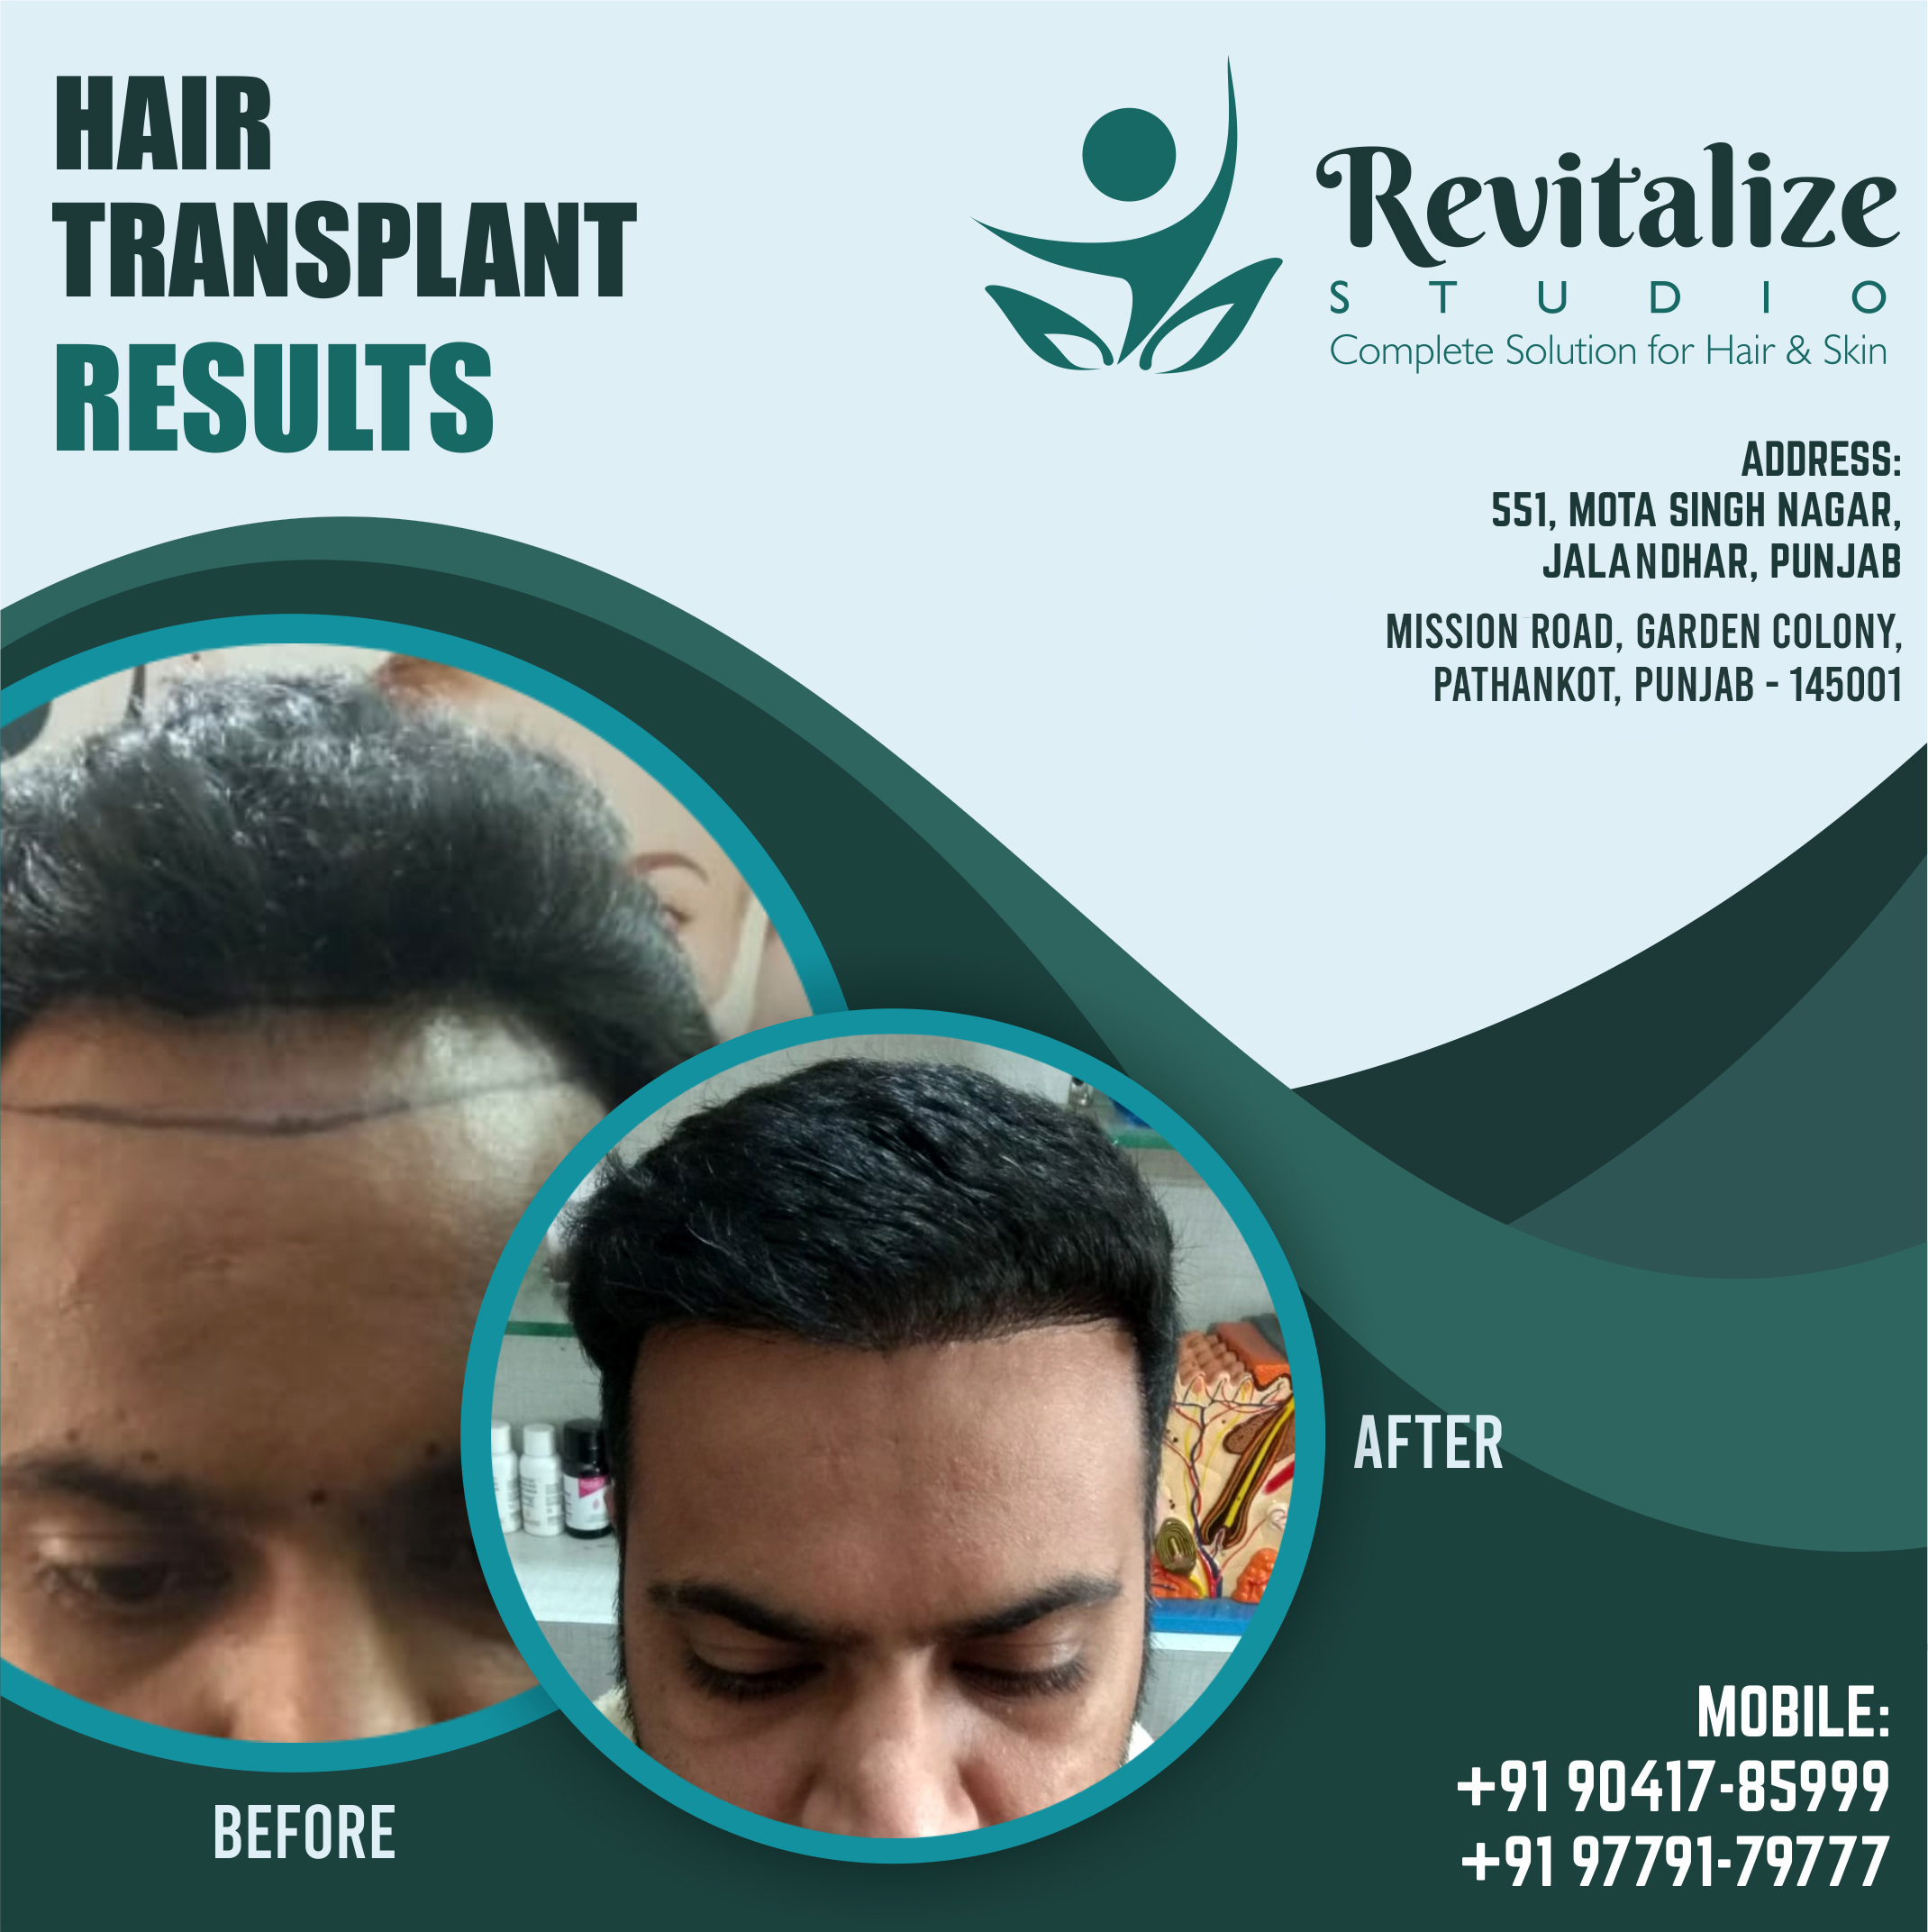 Hair Transplant In Jalandhar Cost | Revitalize Studios, Jalandhar, Punjab